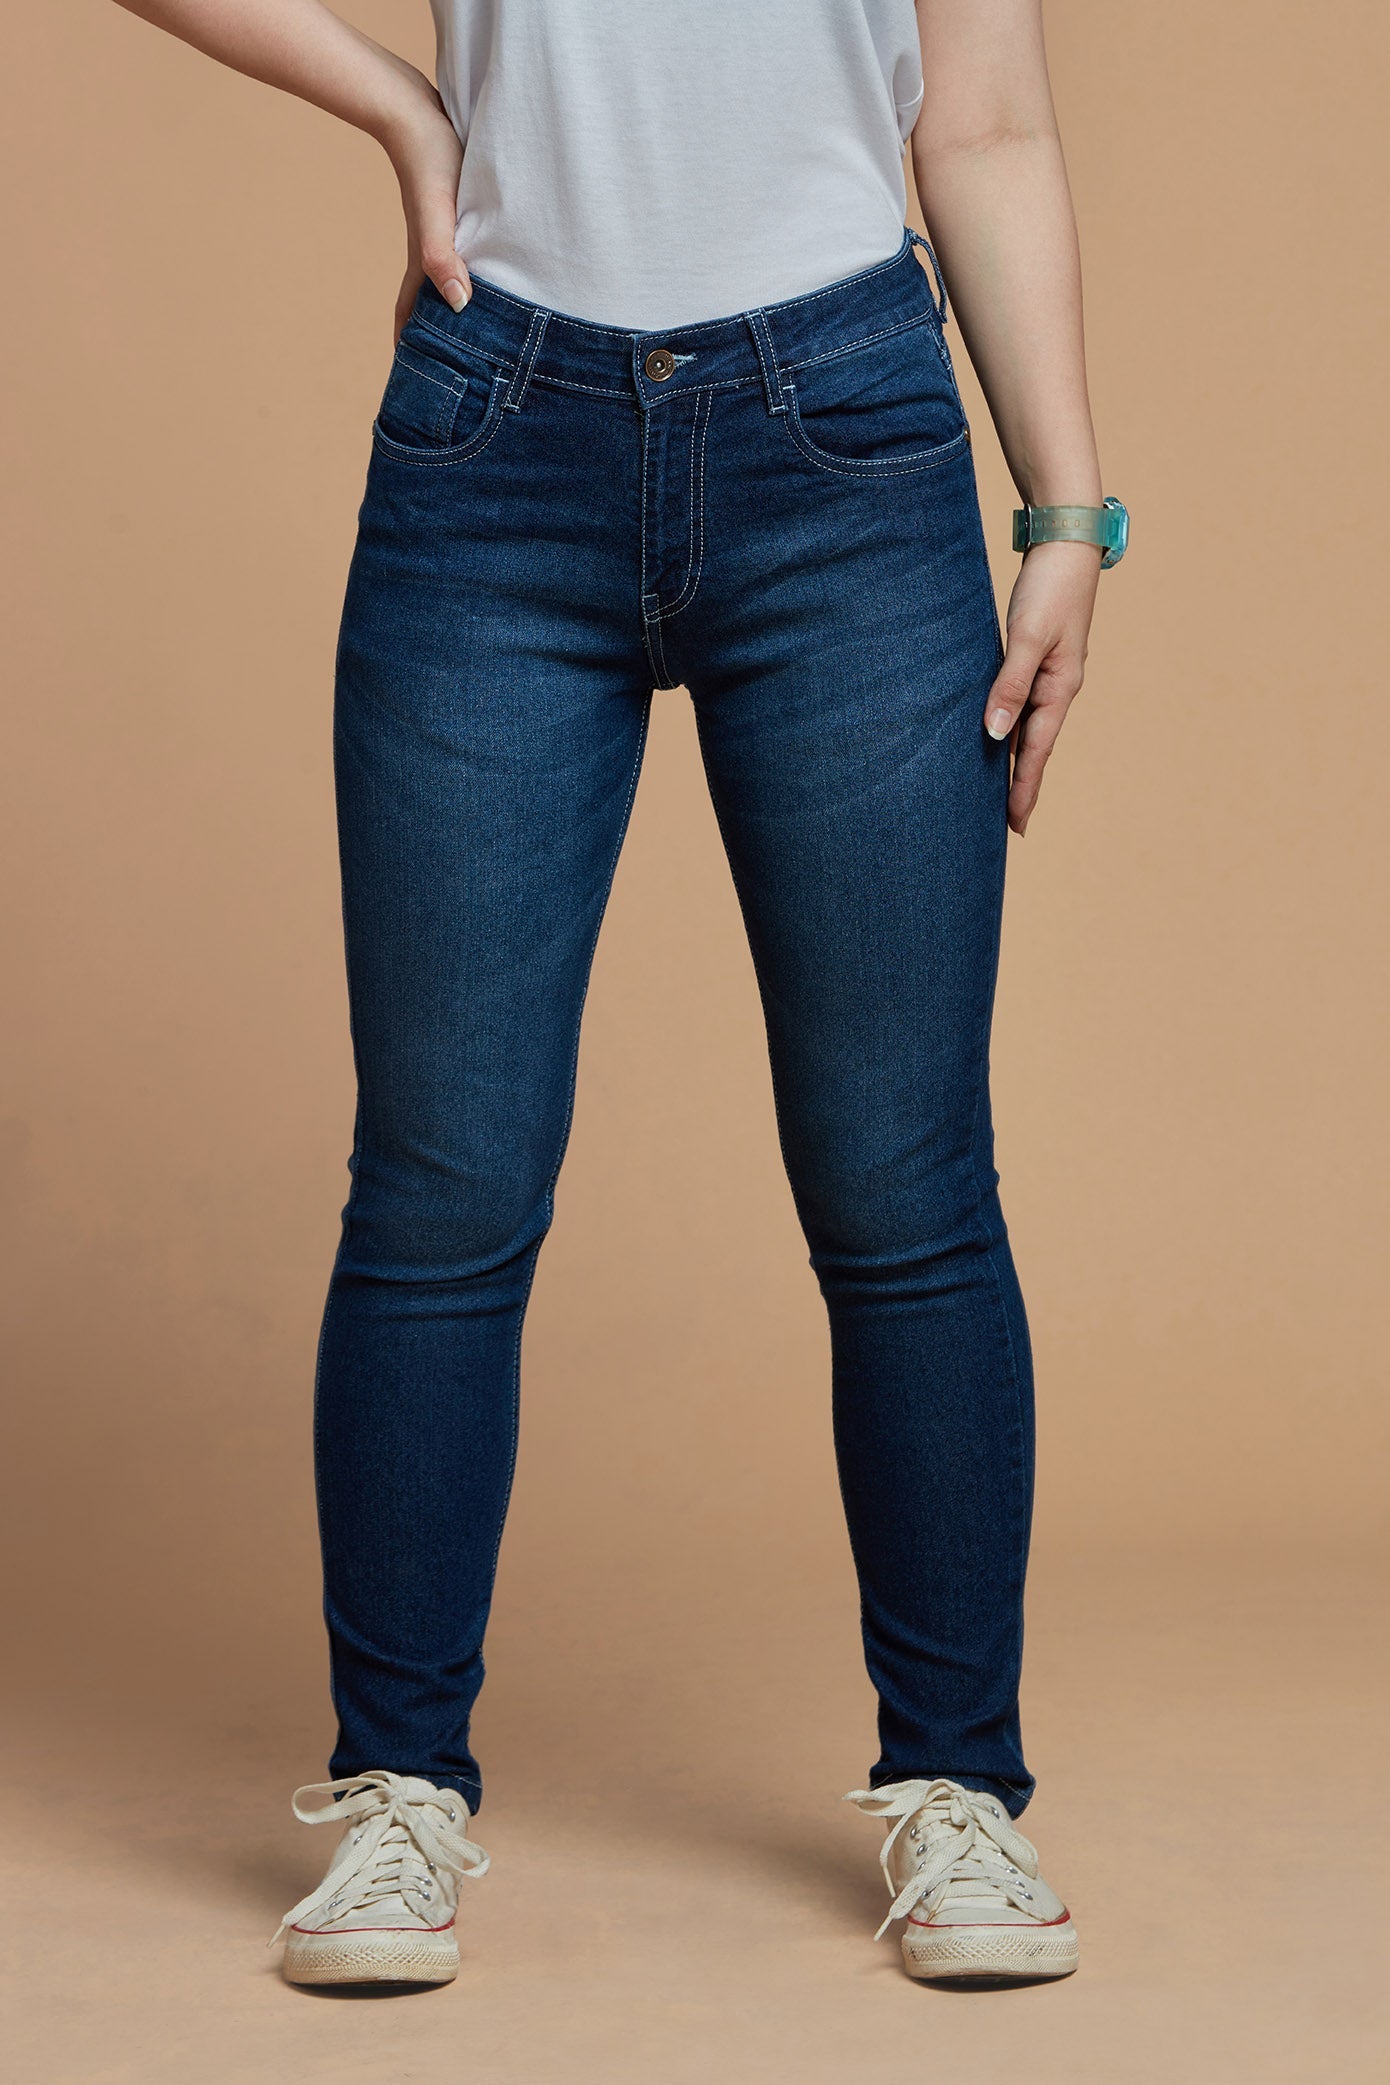 Buy Classy Deep Blue Denim Jeans for Women – Metal Hawk